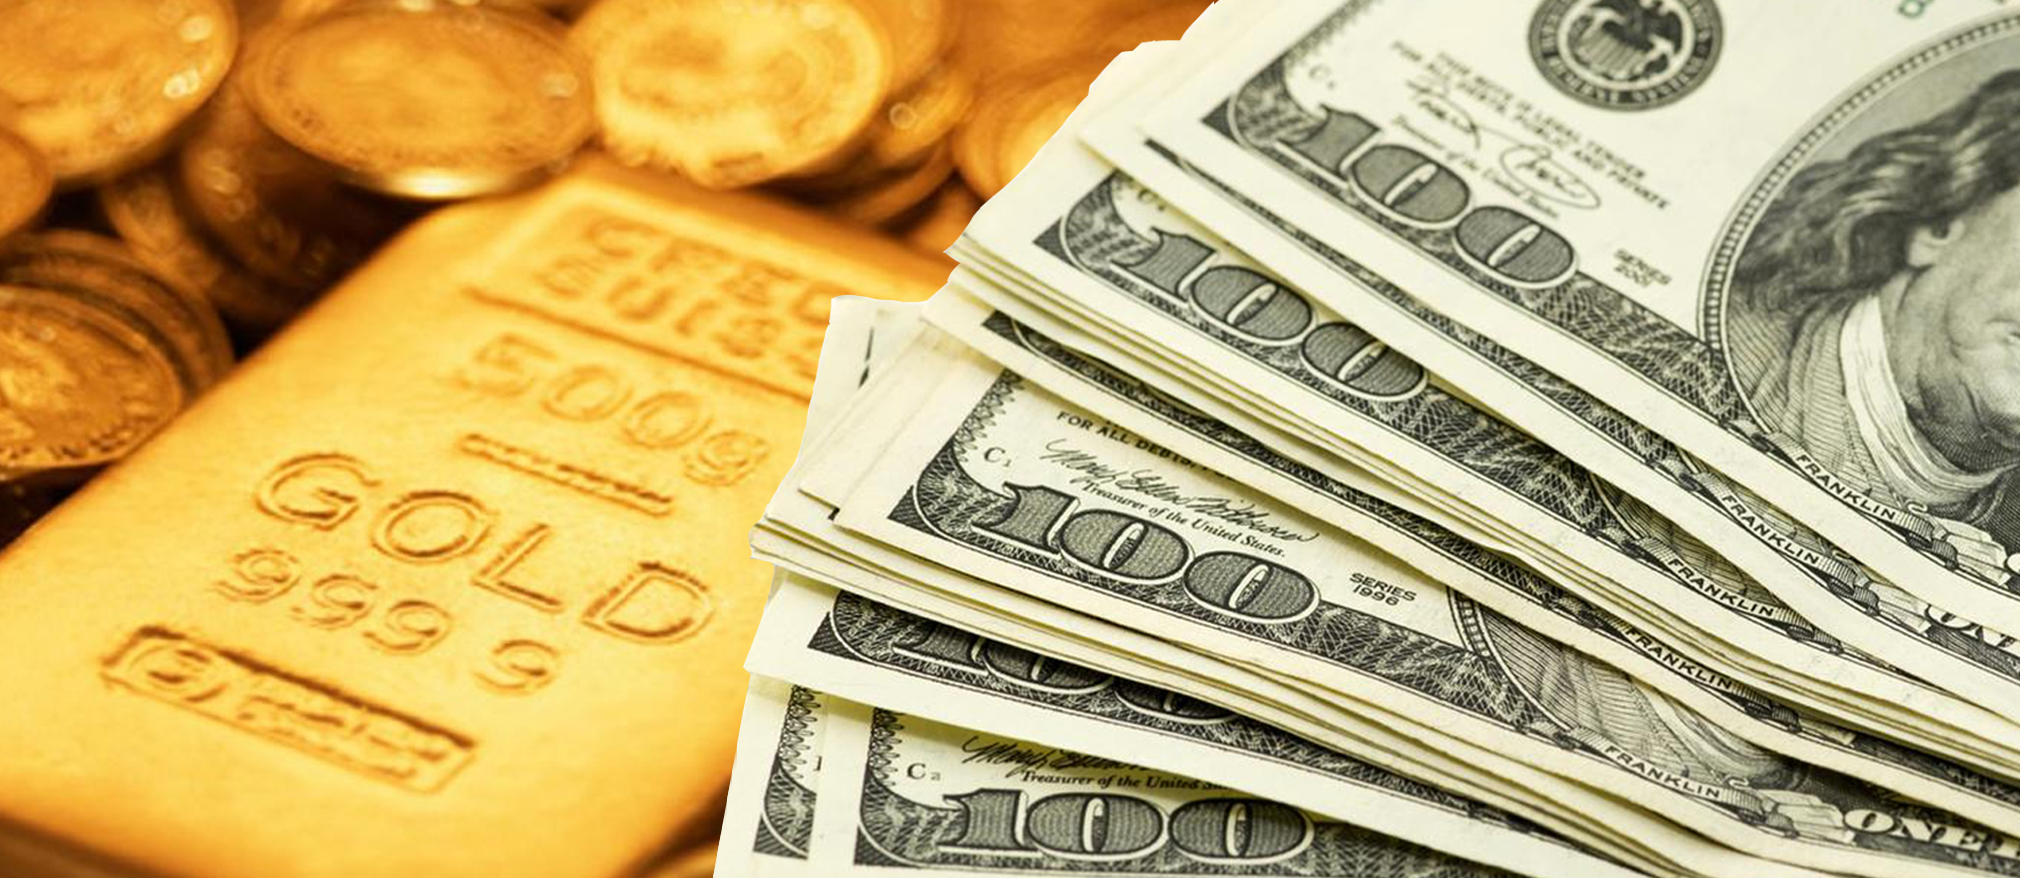 علاقة انخفاض الدولار الأمريكي بأسعار الذهب والمعادن